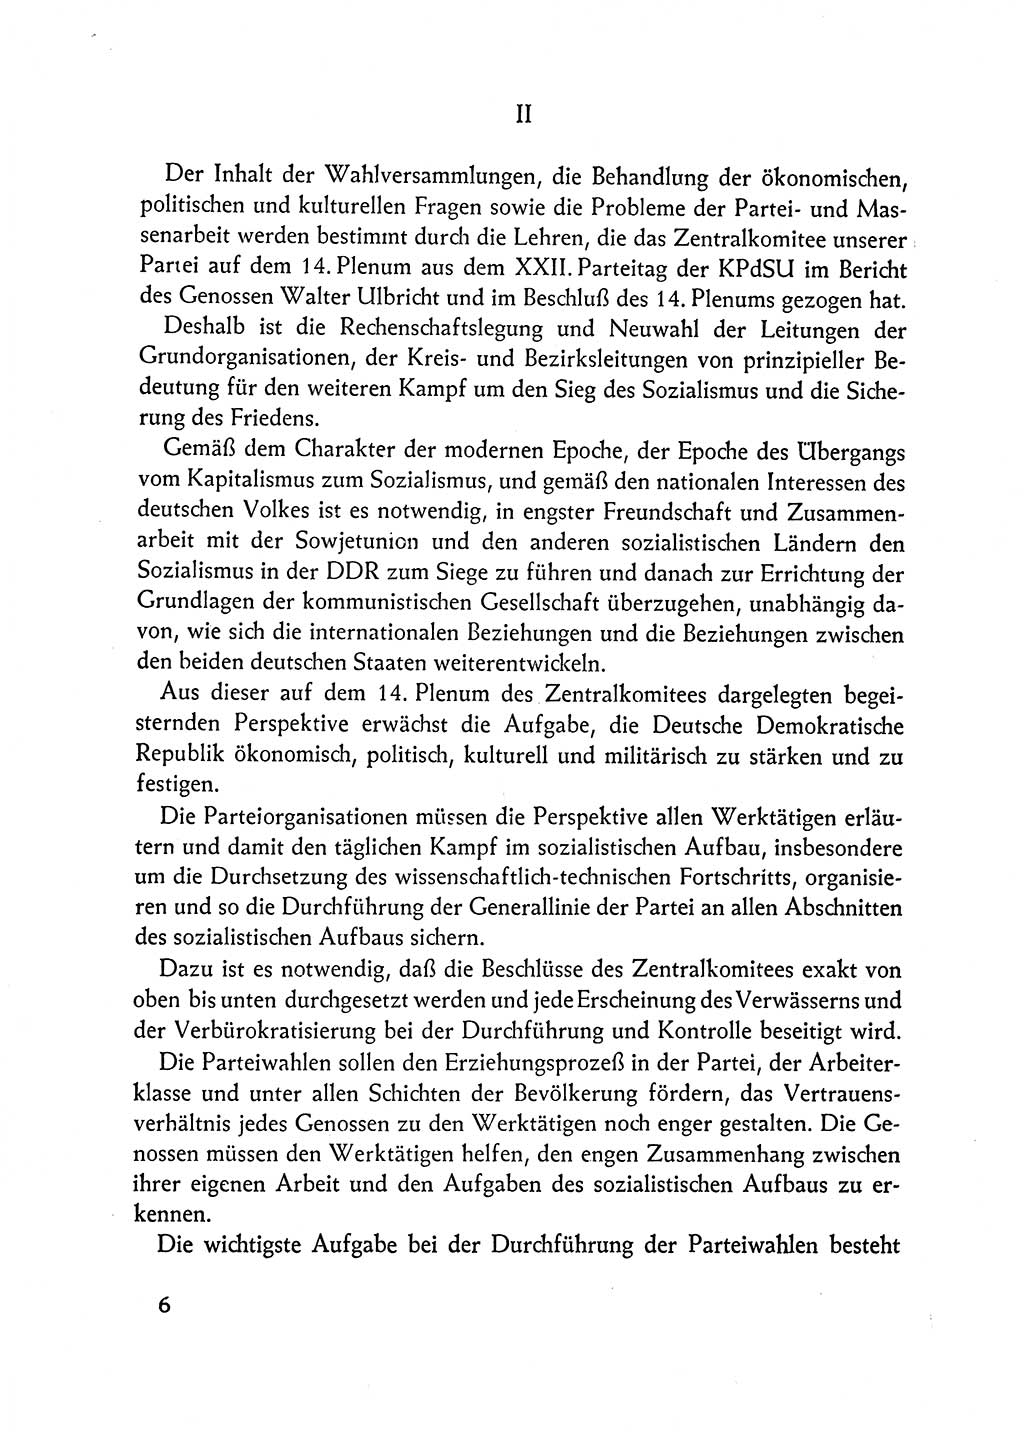 Dokumente der Sozialistischen Einheitspartei Deutschlands (SED) [Deutsche Demokratische Republik (DDR)] 1962-1963, Seite 6 (Dok. SED DDR 1962-1963, S. 6)